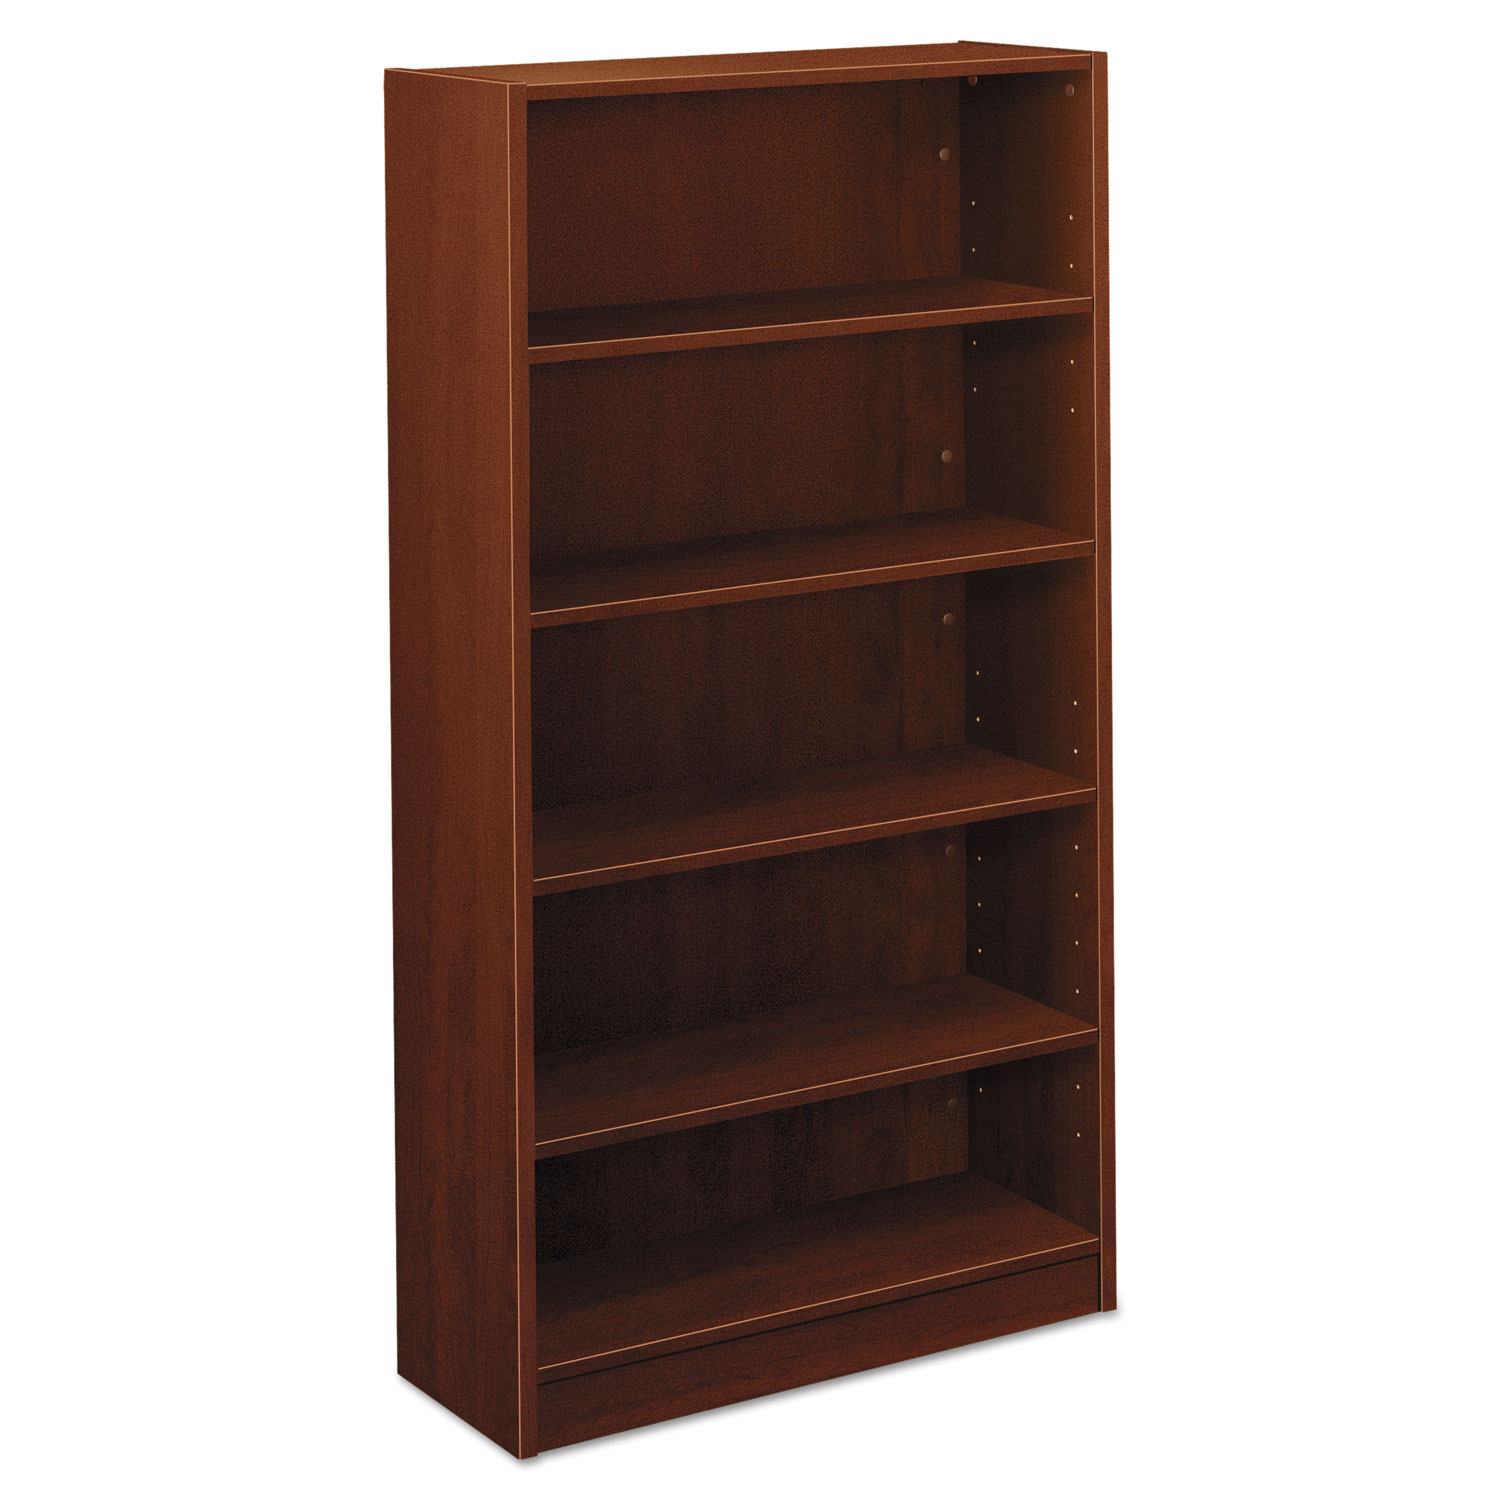 BL Laminate Series Five Shelf Bookcase, 32w x 13 13/16d x 65 3/8h, Medium Cherry